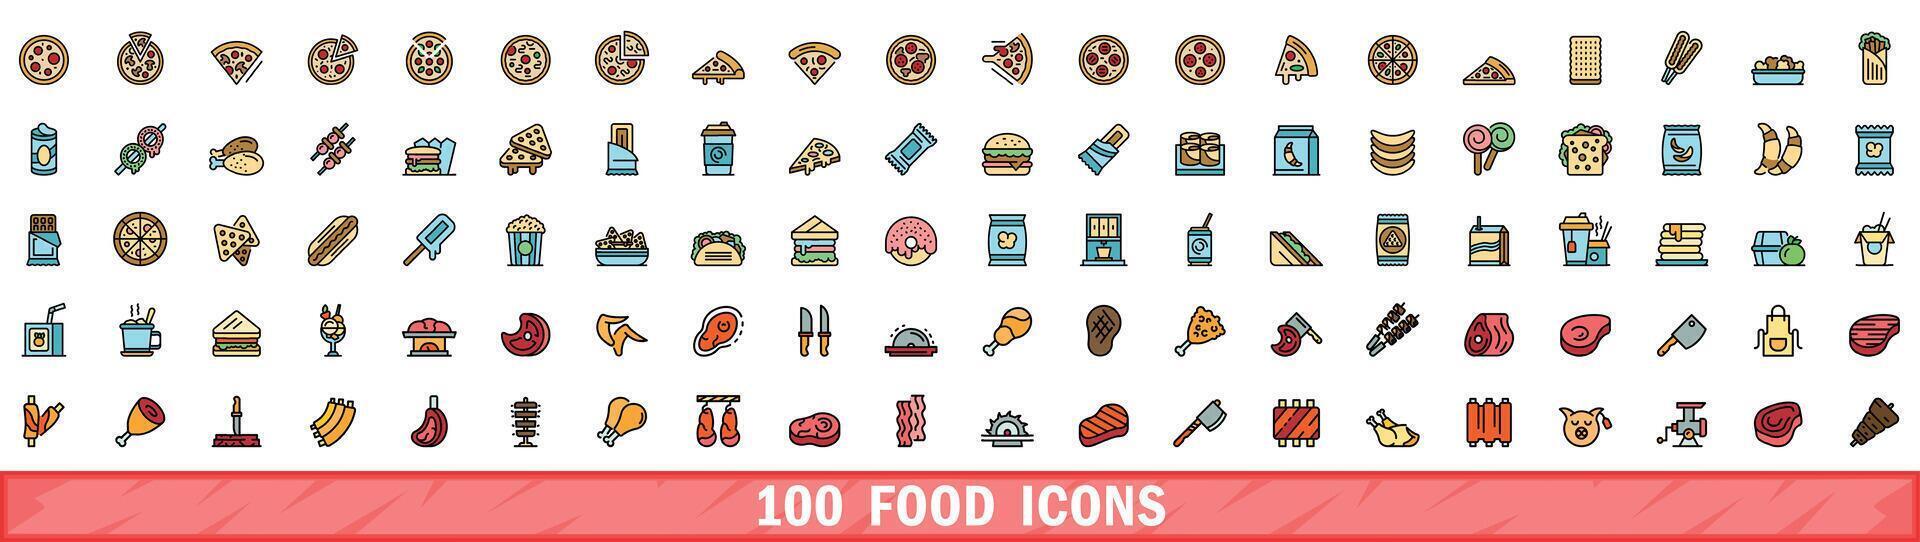 100 voedsel pictogrammen set, kleur lijn stijl vector